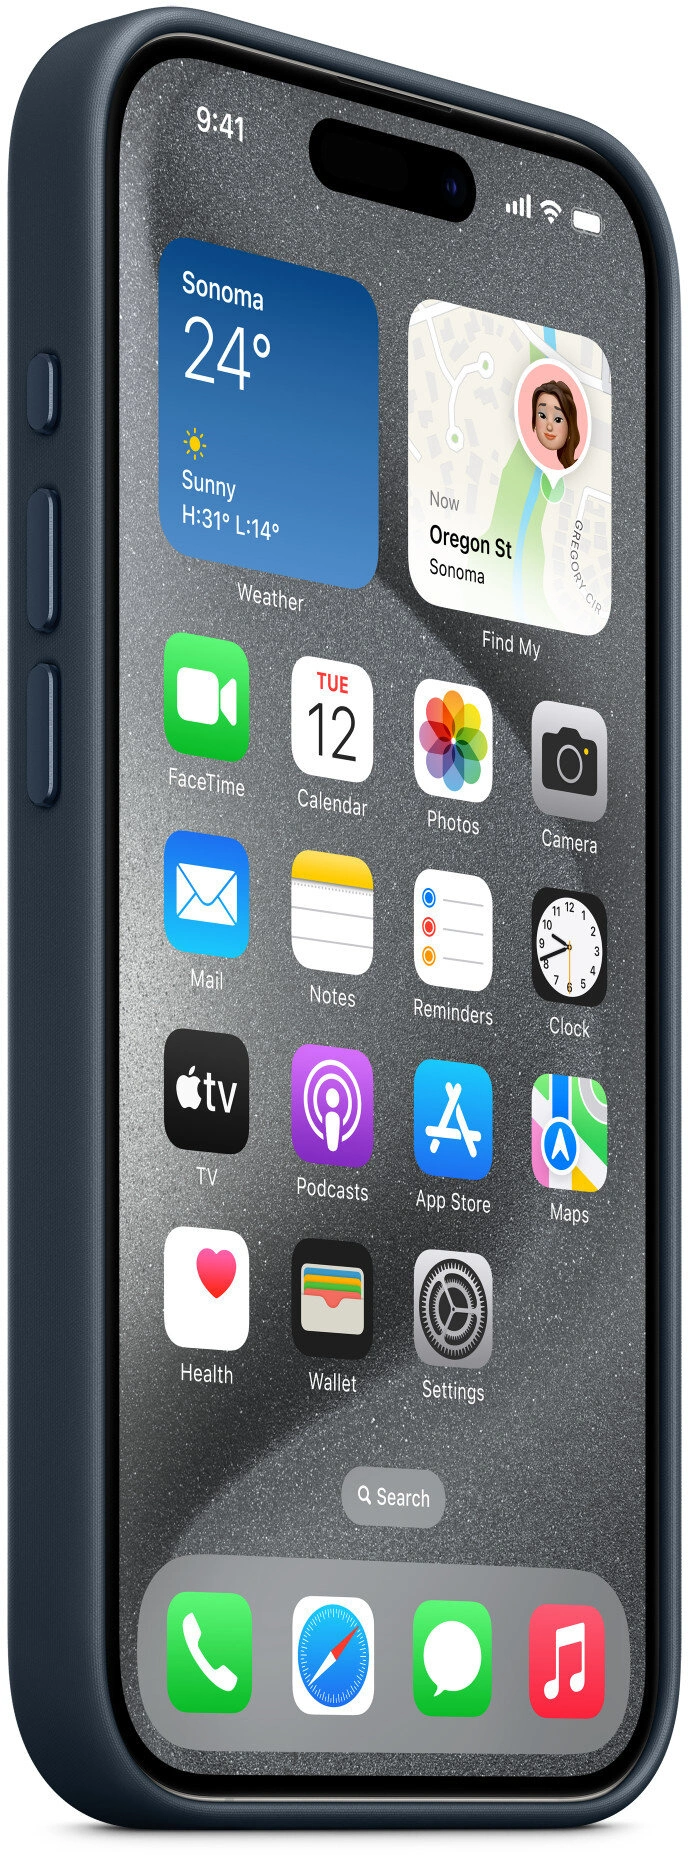 Apple kryt z tkaniny FineWoven s MagSafe na iPhone 15 Pro, tichomořsky modrá